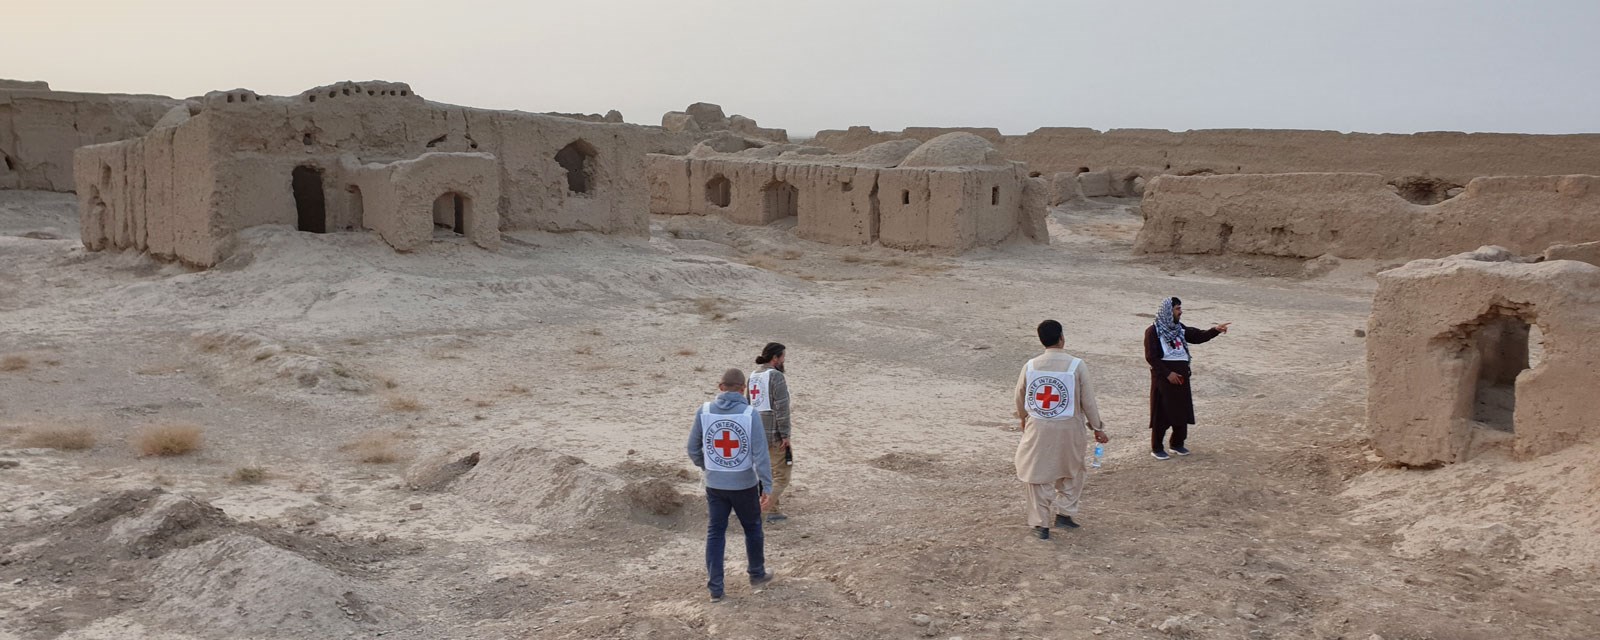 Røde Kors i Afghanistan